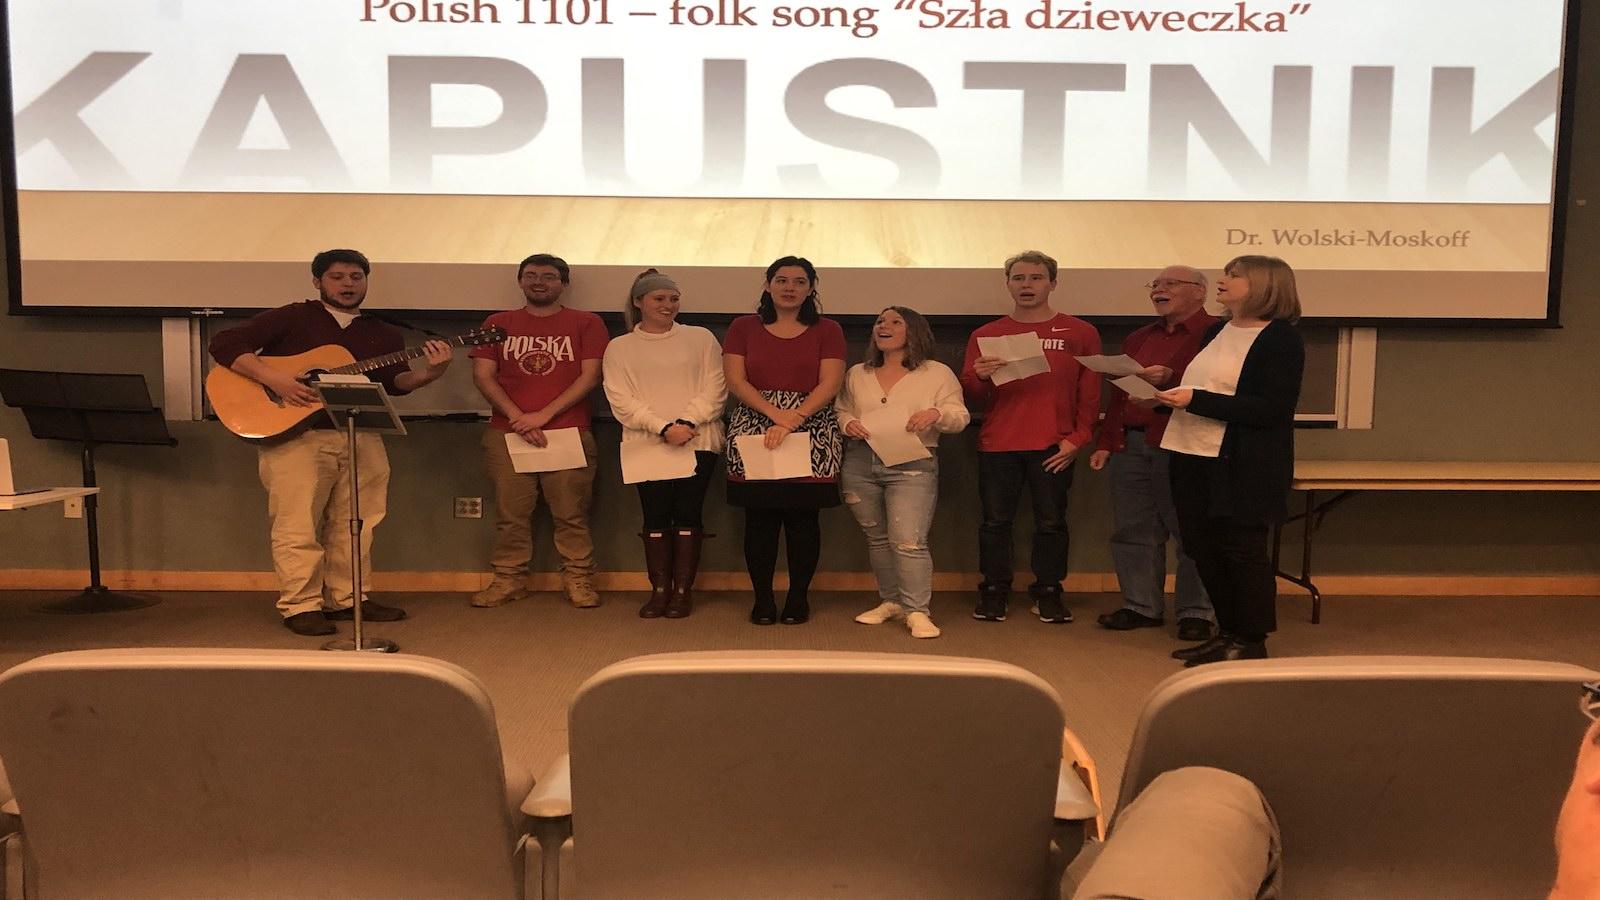 Dr. Izolda Wolski-Moskoff's Polish 1101 class sings a Polish folk song